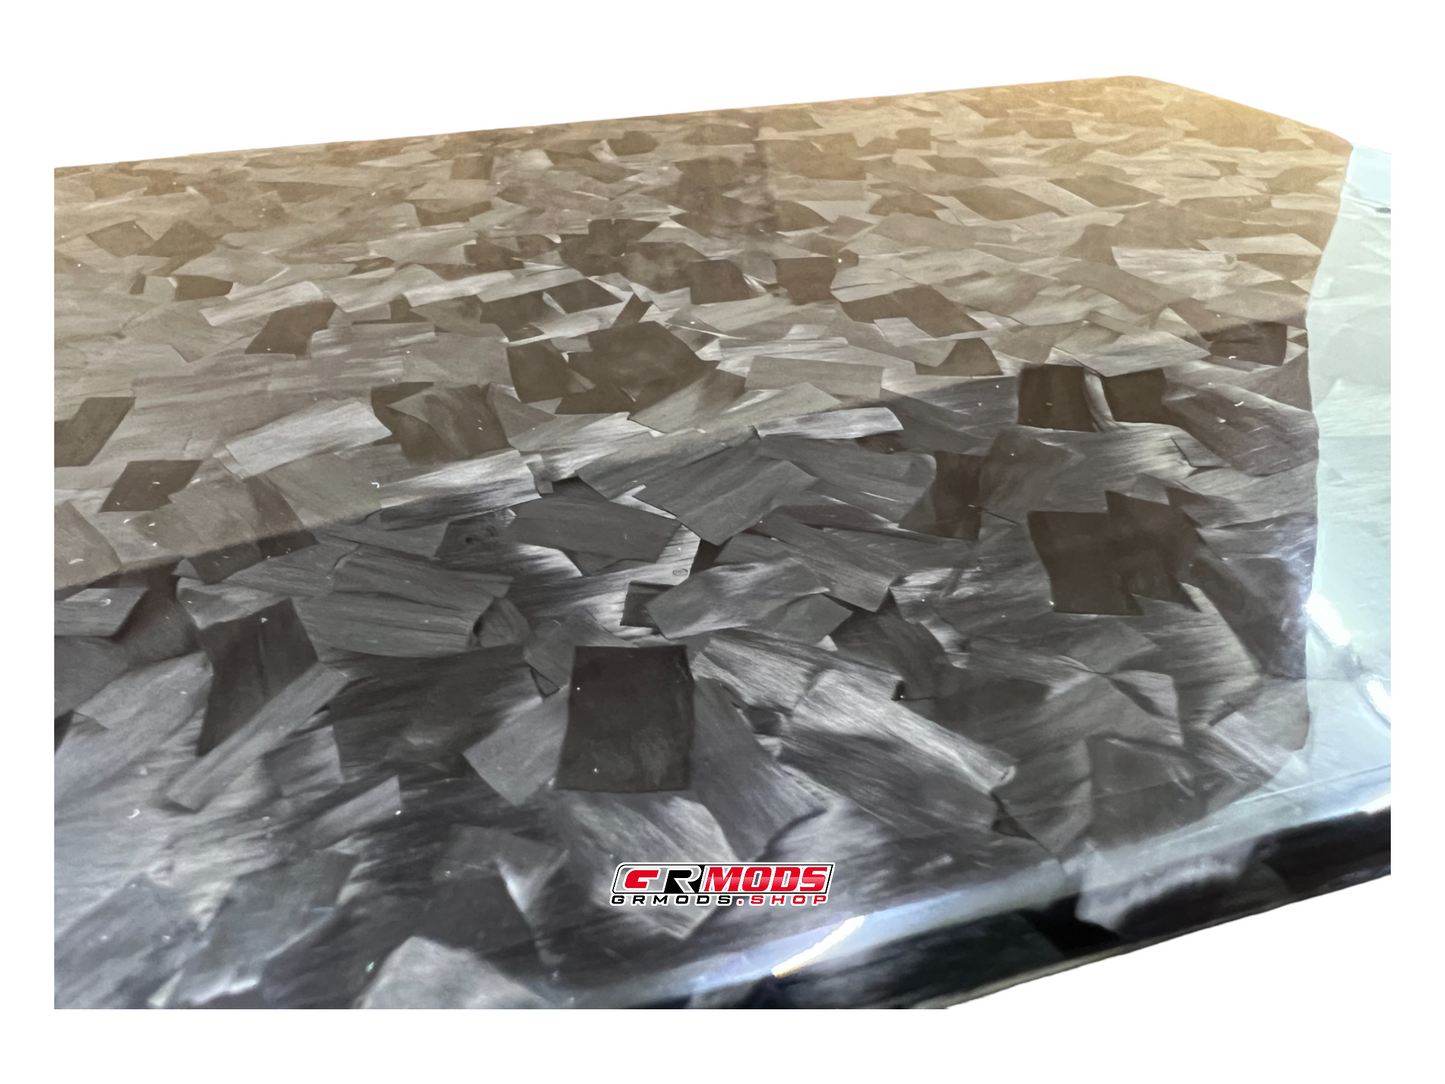 GRMODS Carbon Fiber Fuse Box Cover